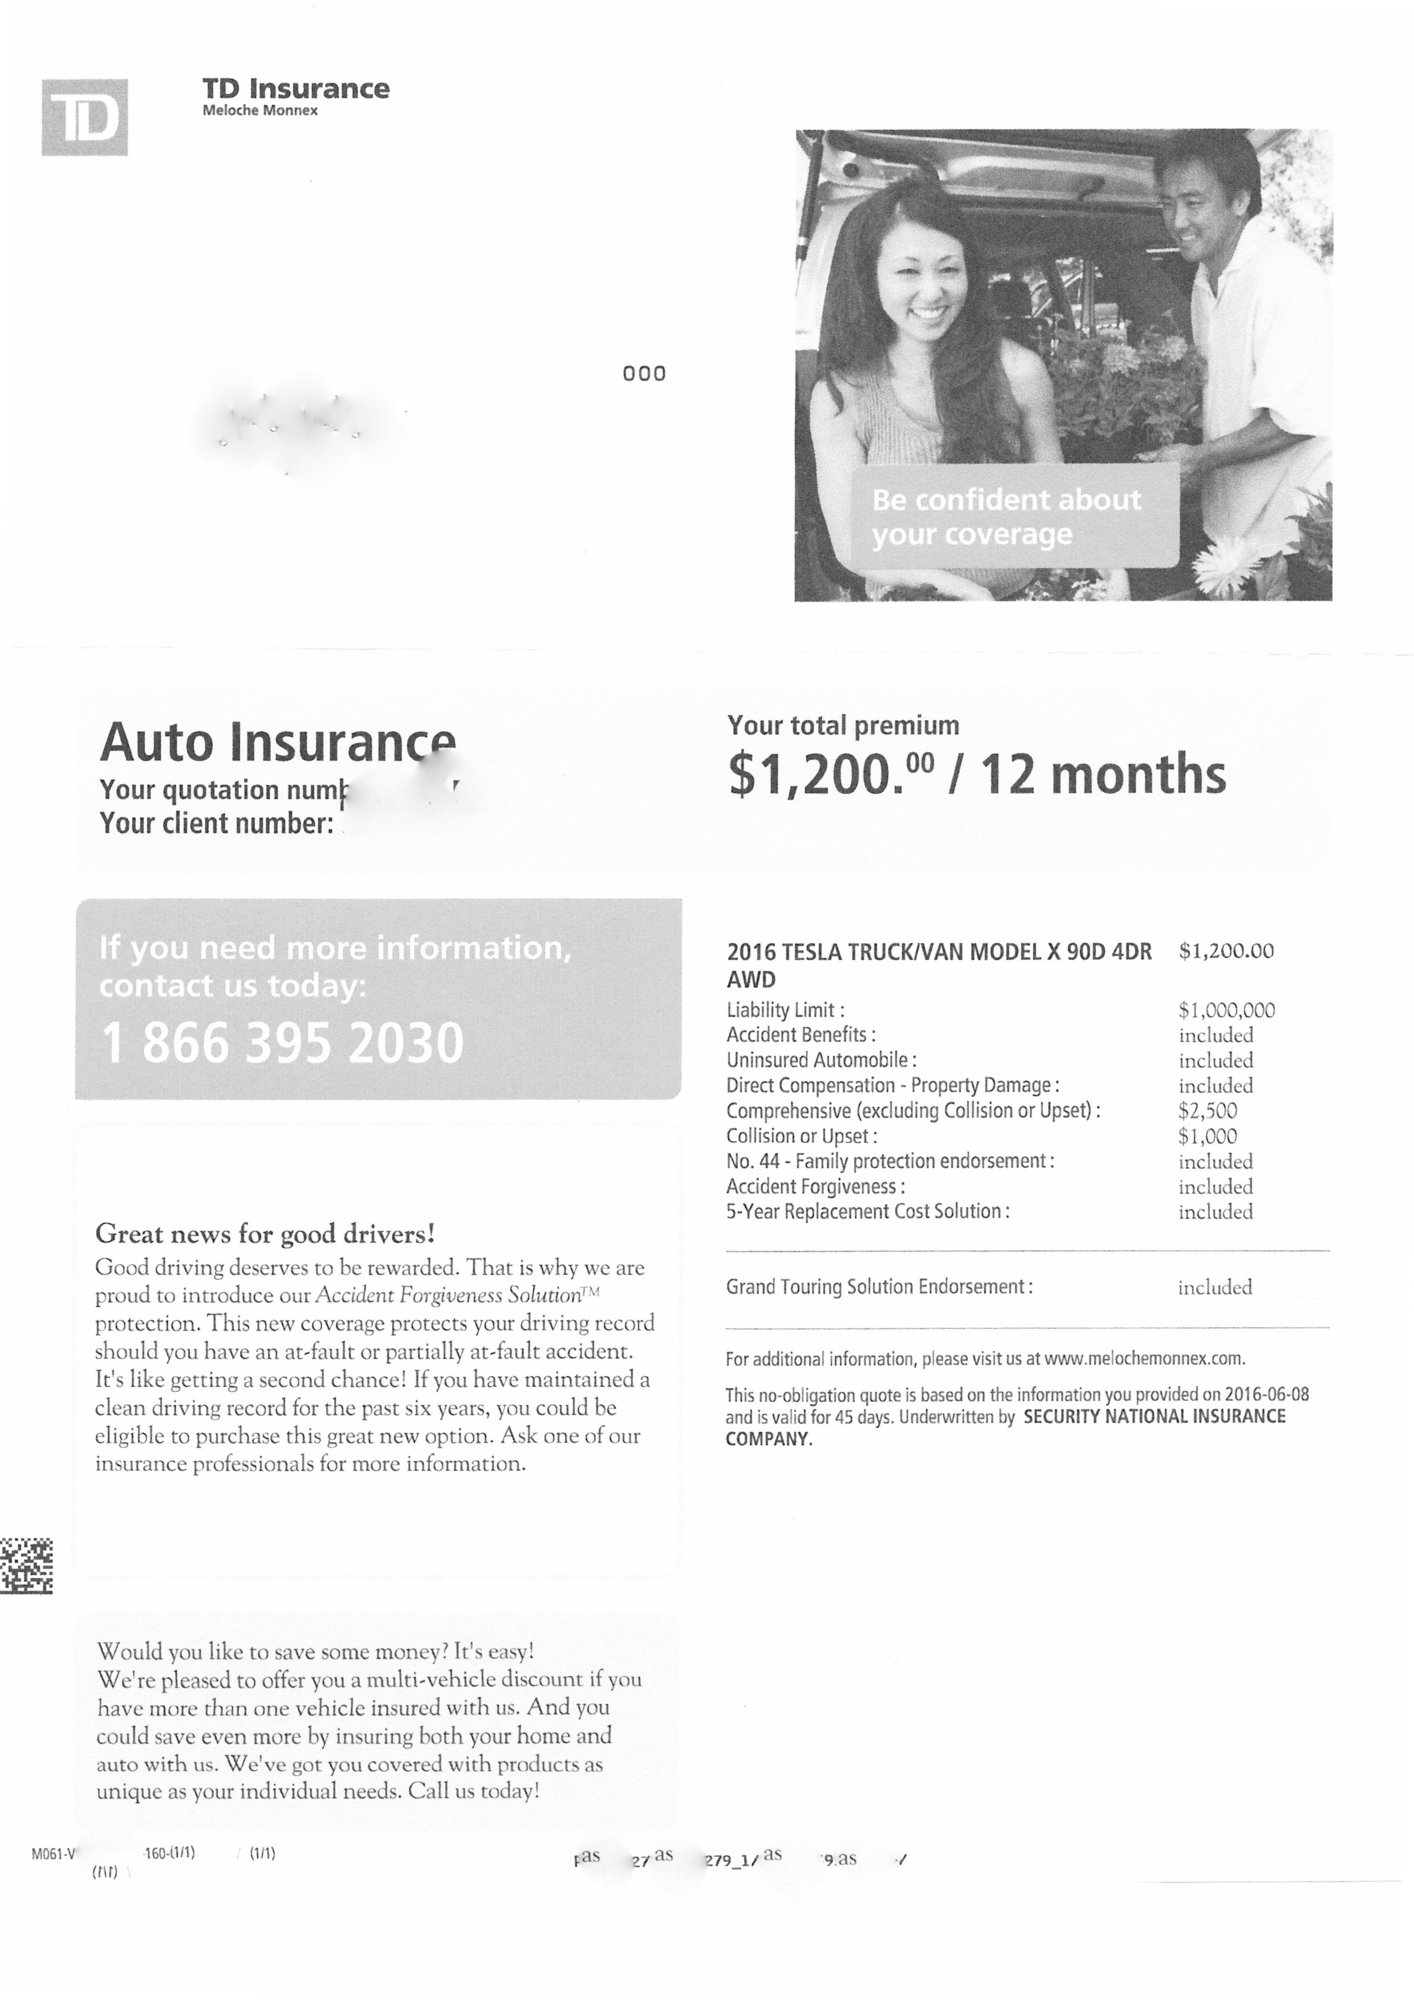 Model X Insurance.jpg